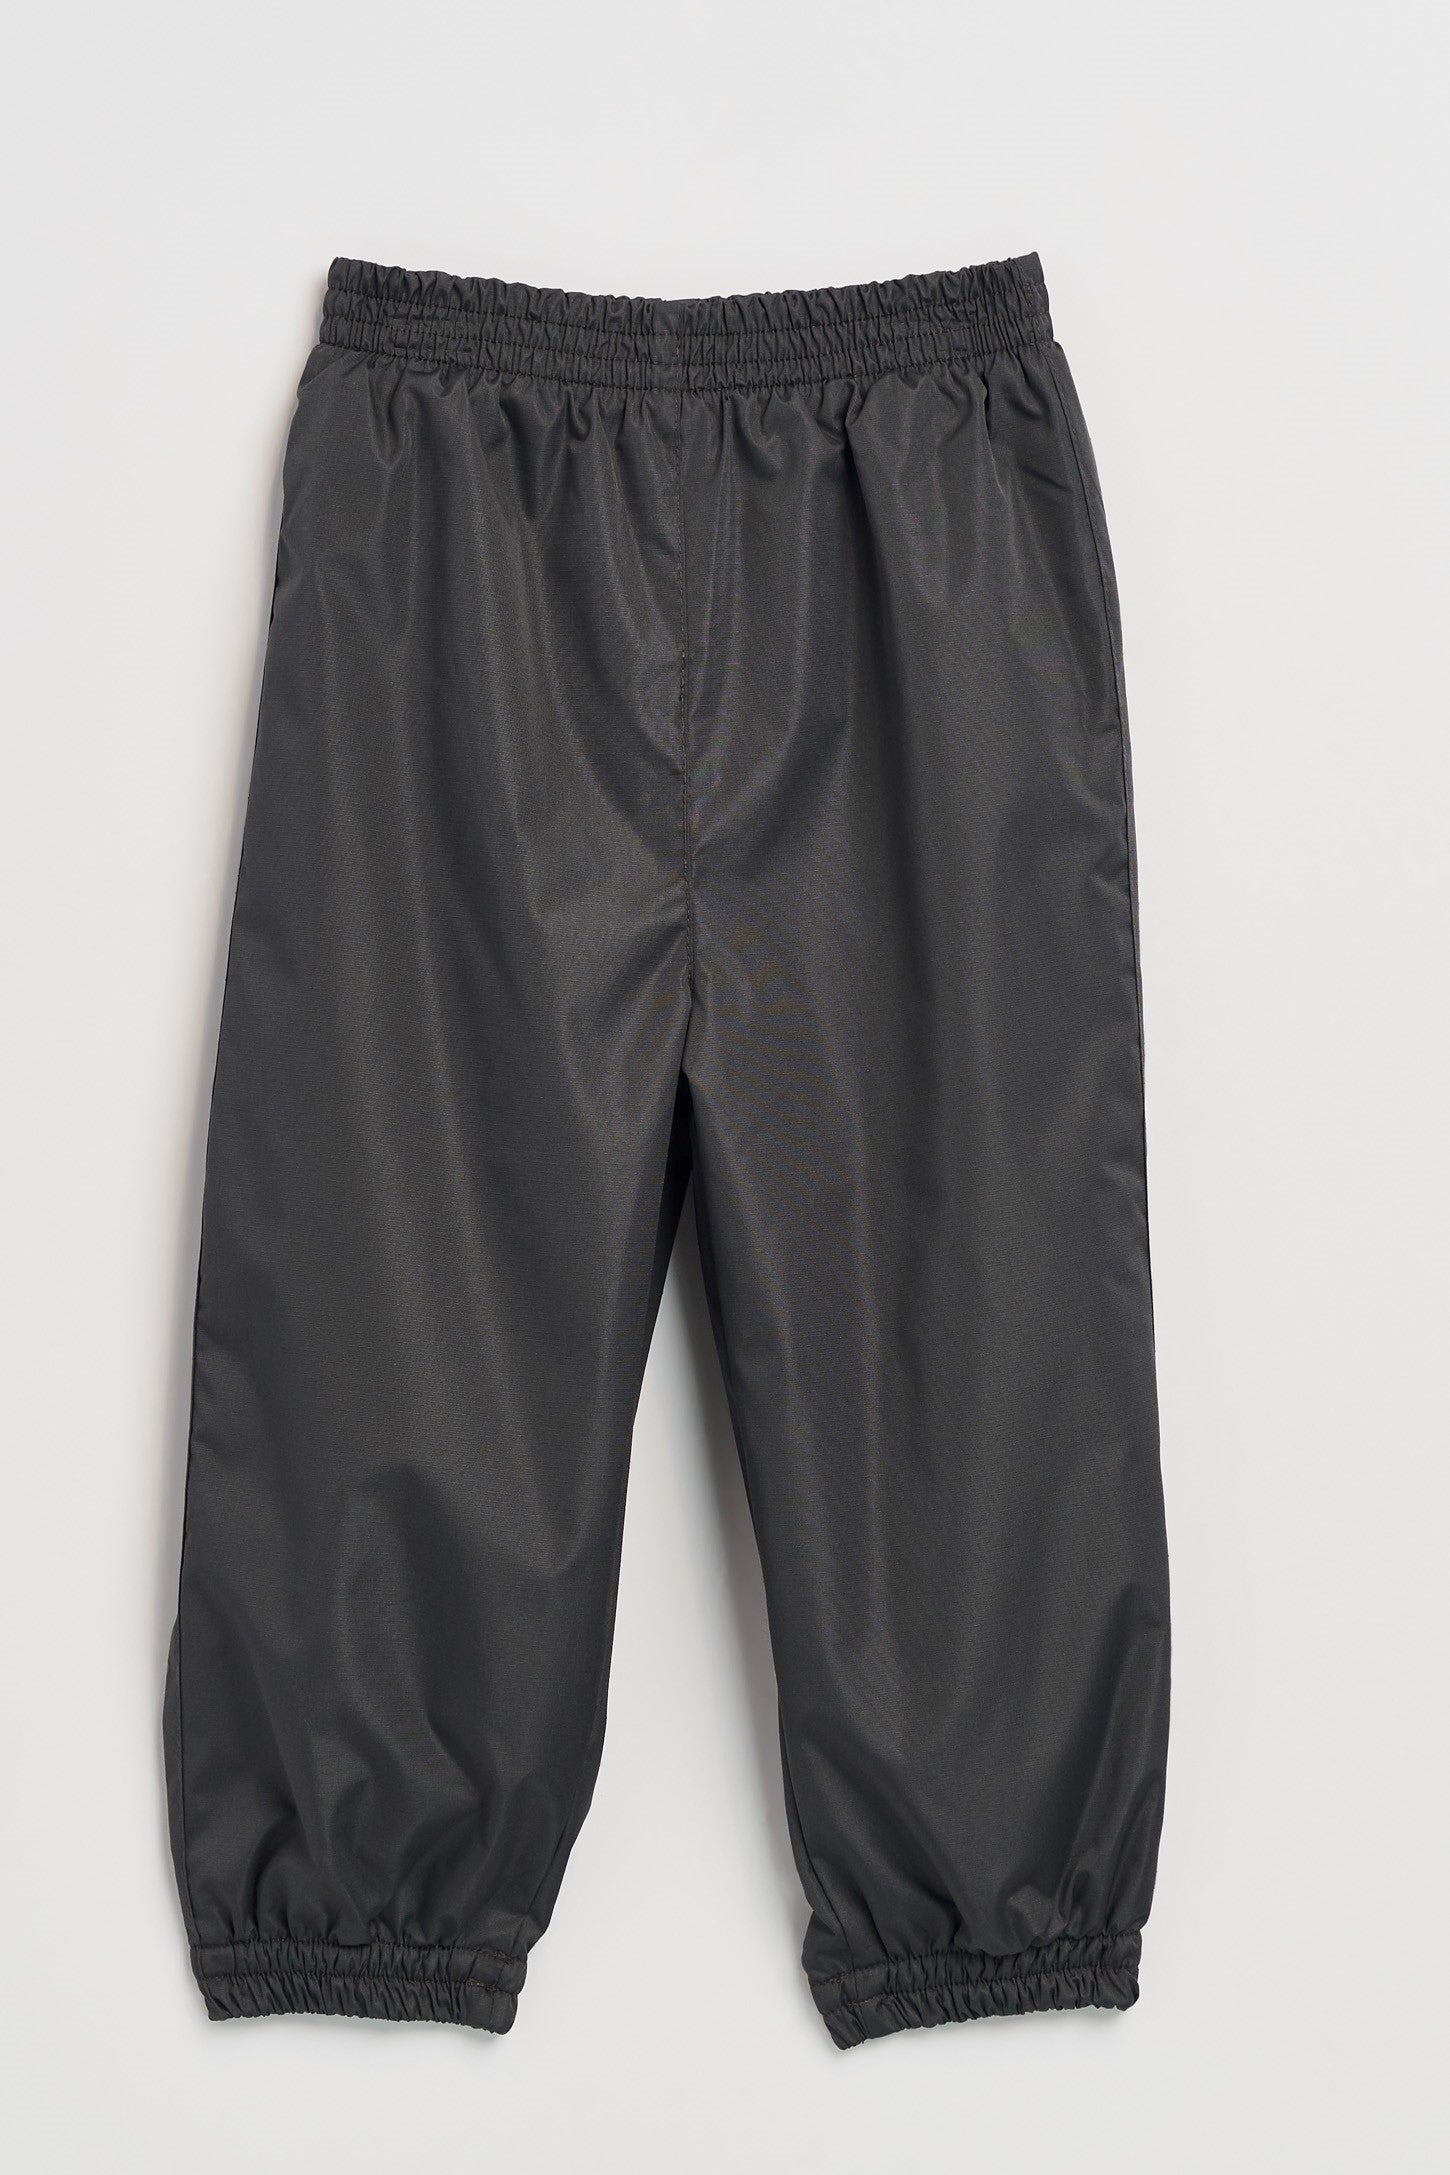 Pantalon d'extérieur doublé en polar, 2T à 3T - Bébé && GRIS FONCE